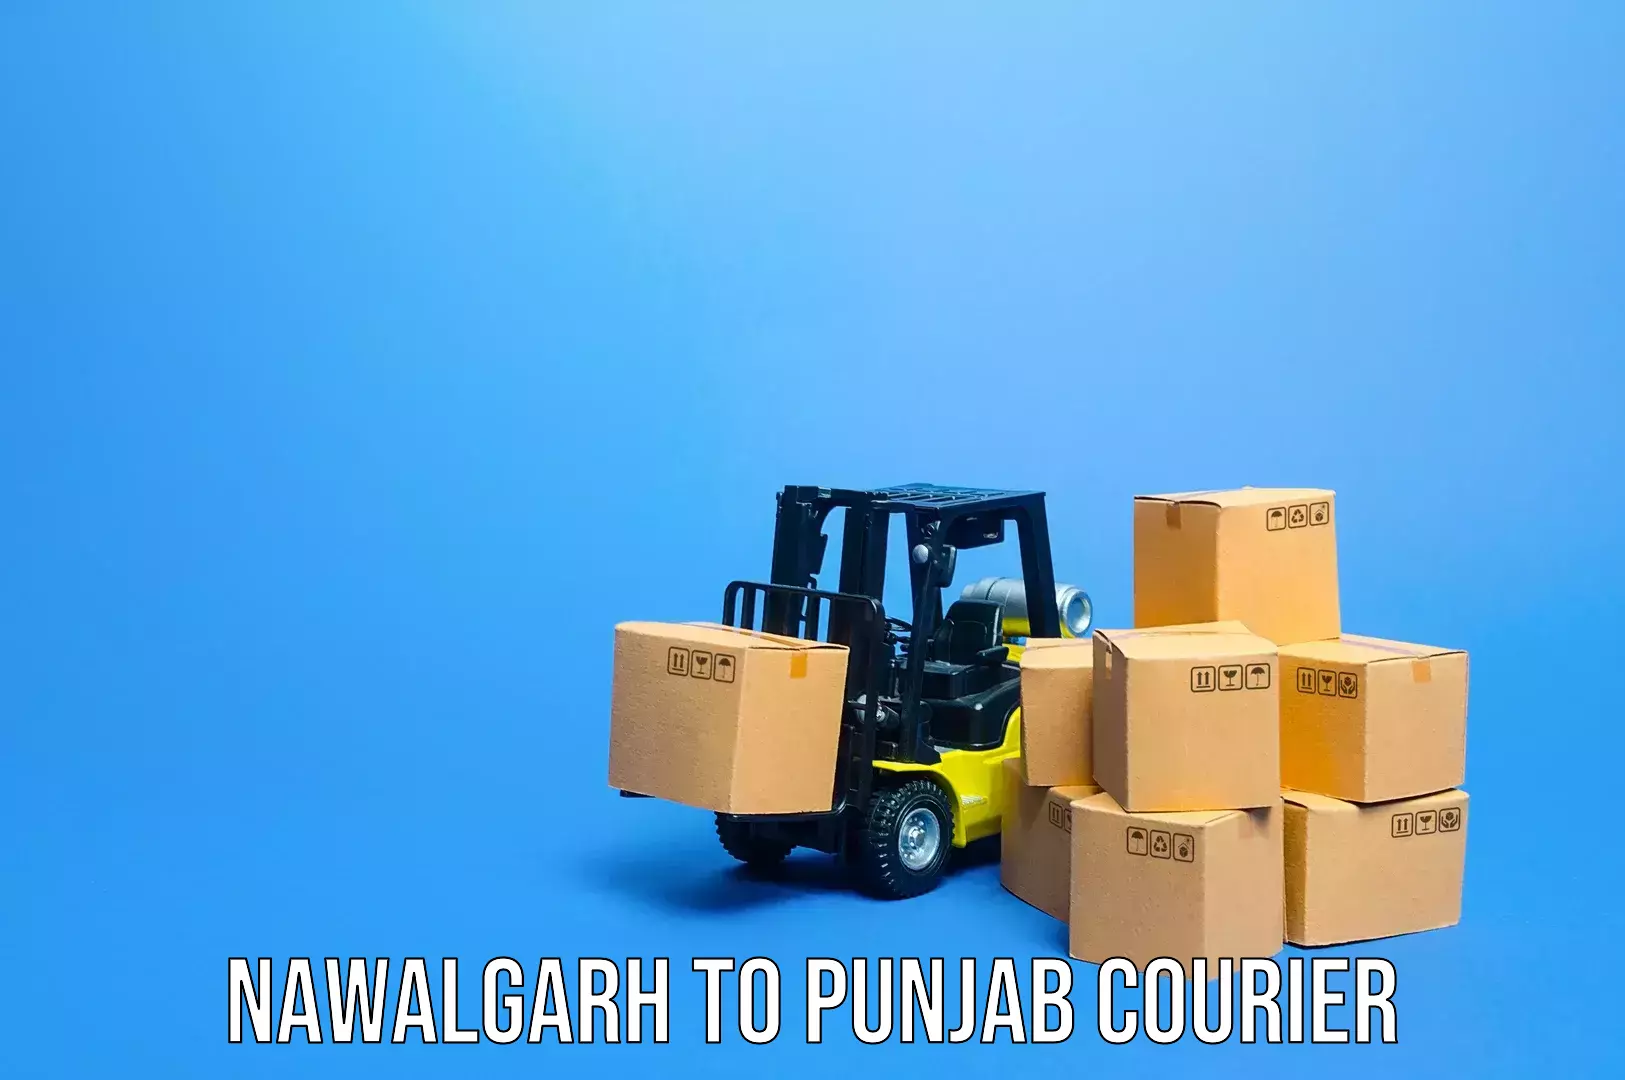 Luggage transit service Nawalgarh to Punjab